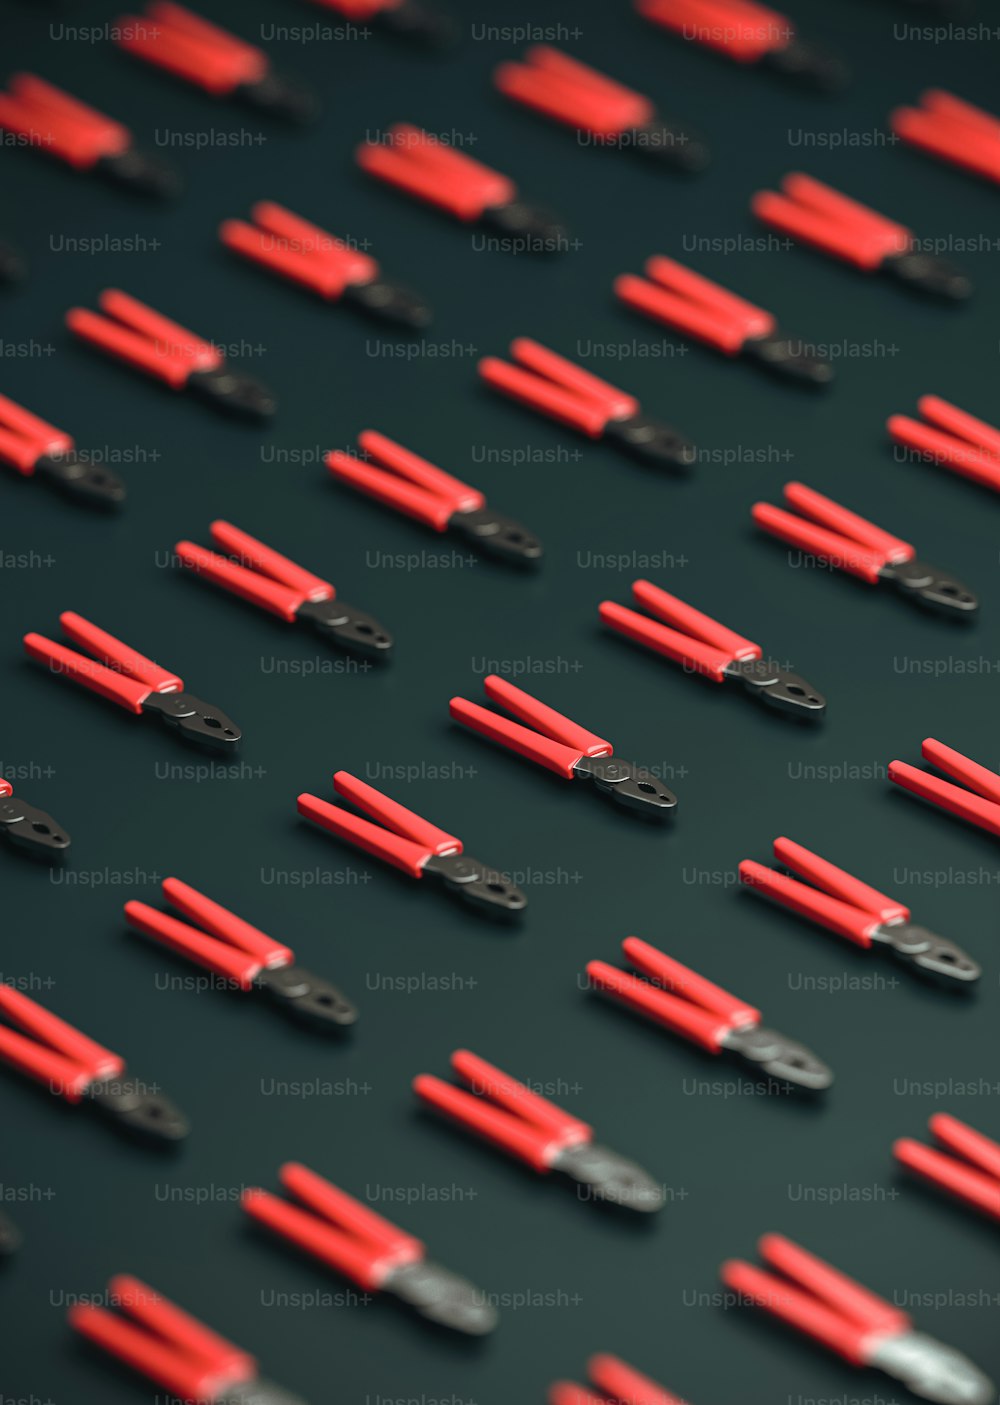 Un grupo de clips rojos y negros sobre una superficie negra